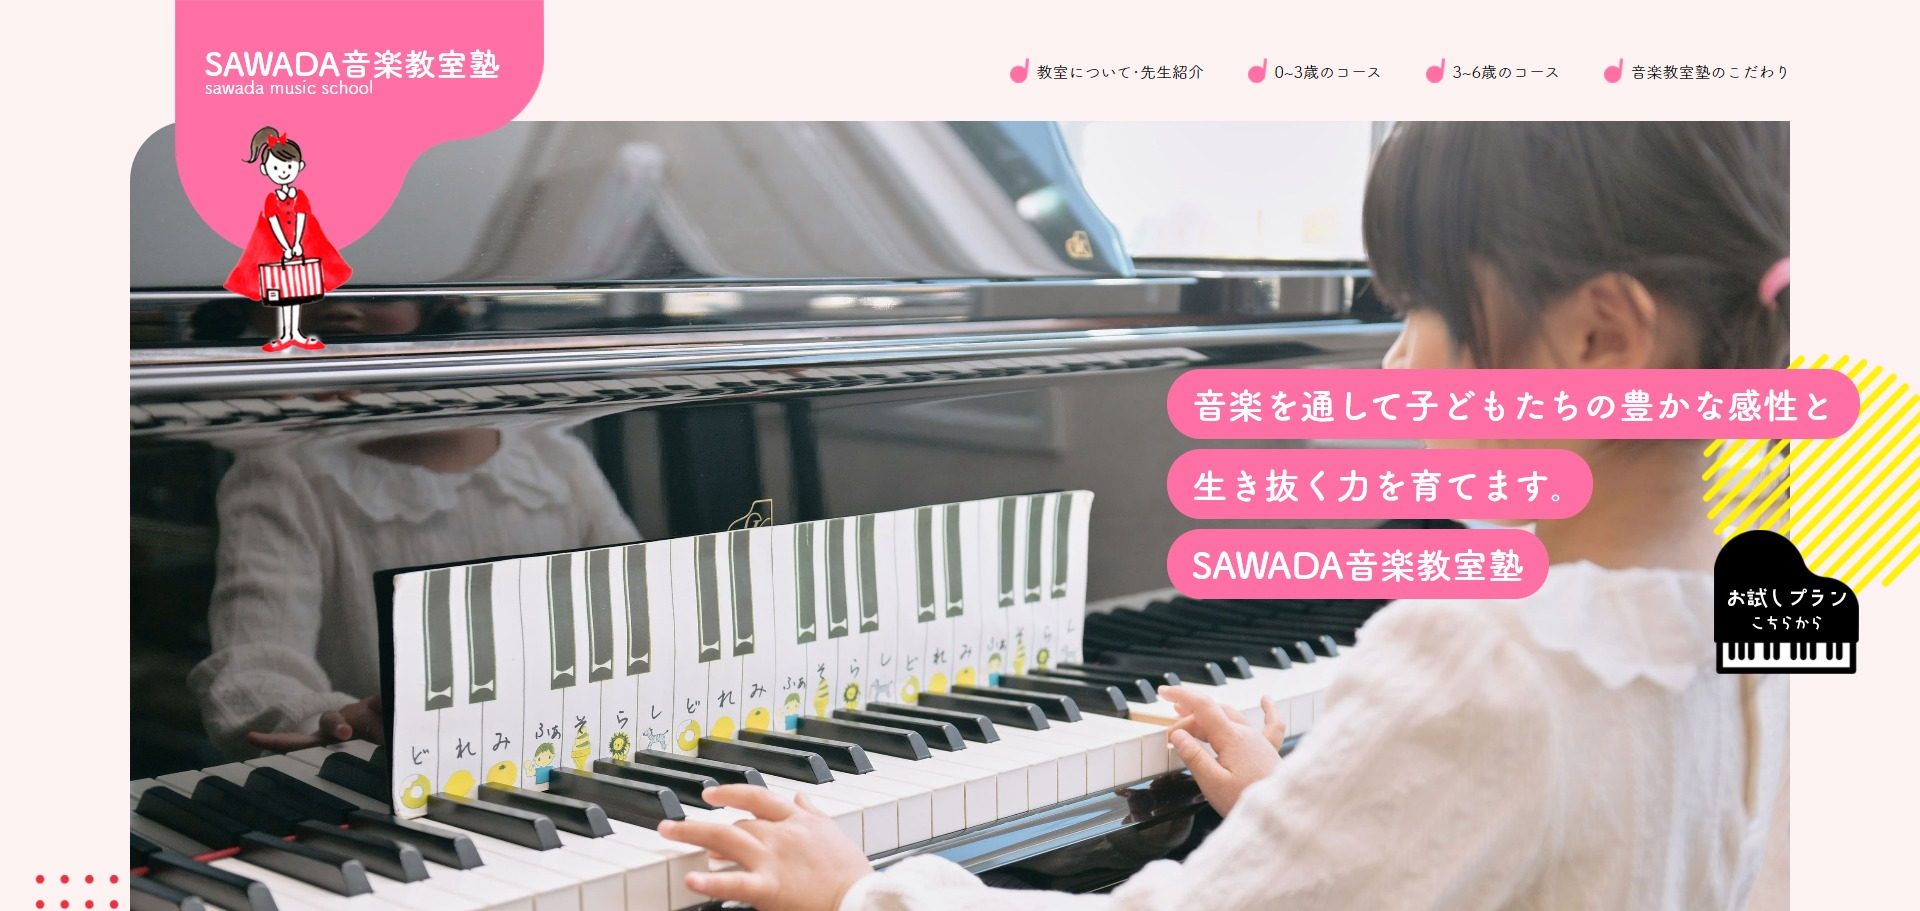 SAWADA音楽教室塾